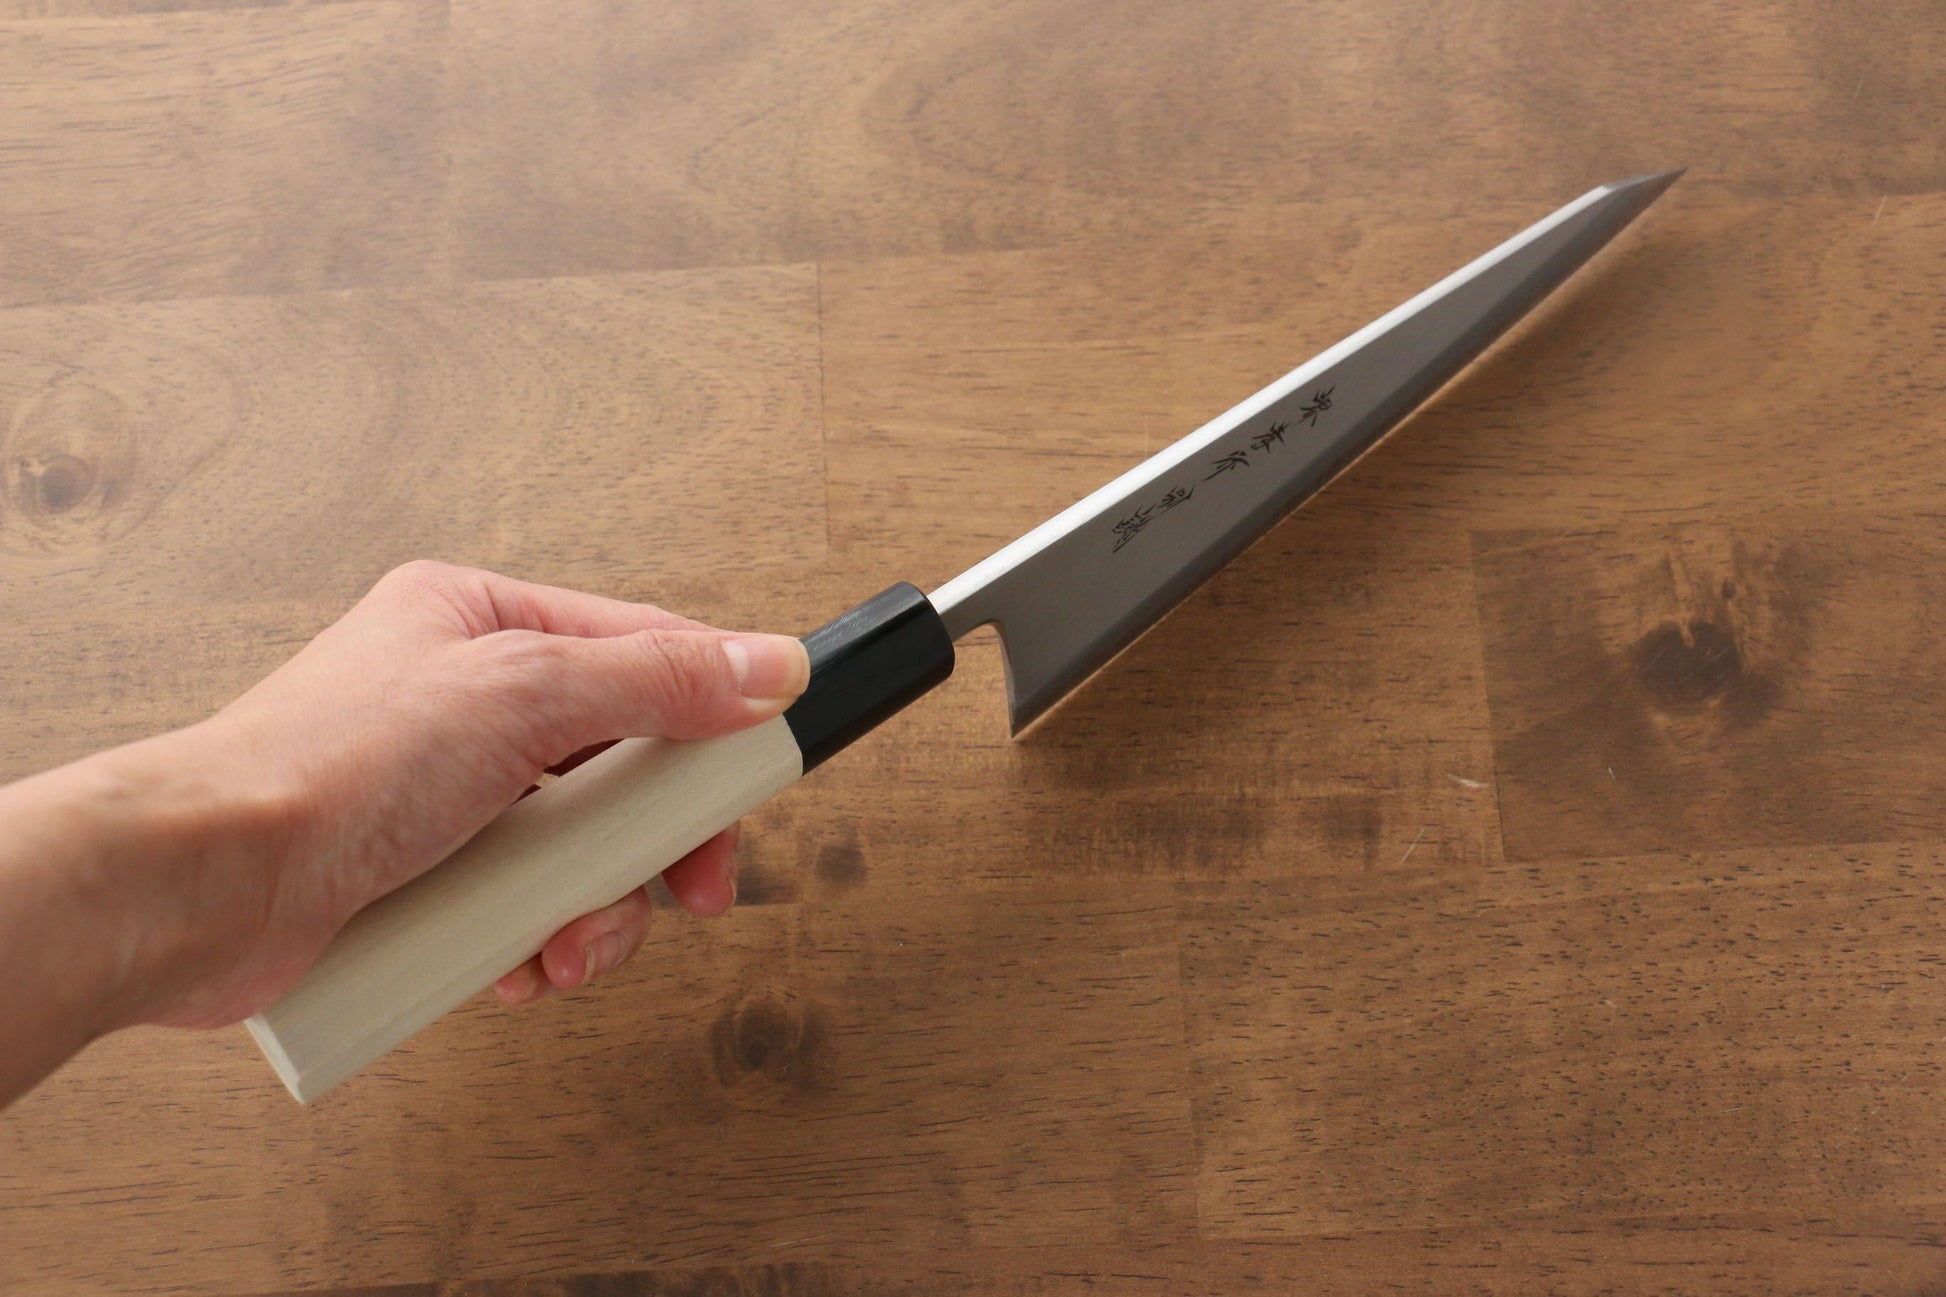 Sakai Takayuki Tokujyo White Steel No.2 Honesuki Boning Japanese Knife 180mm Magnolia Handle - Japanny - Best Japanese Knife